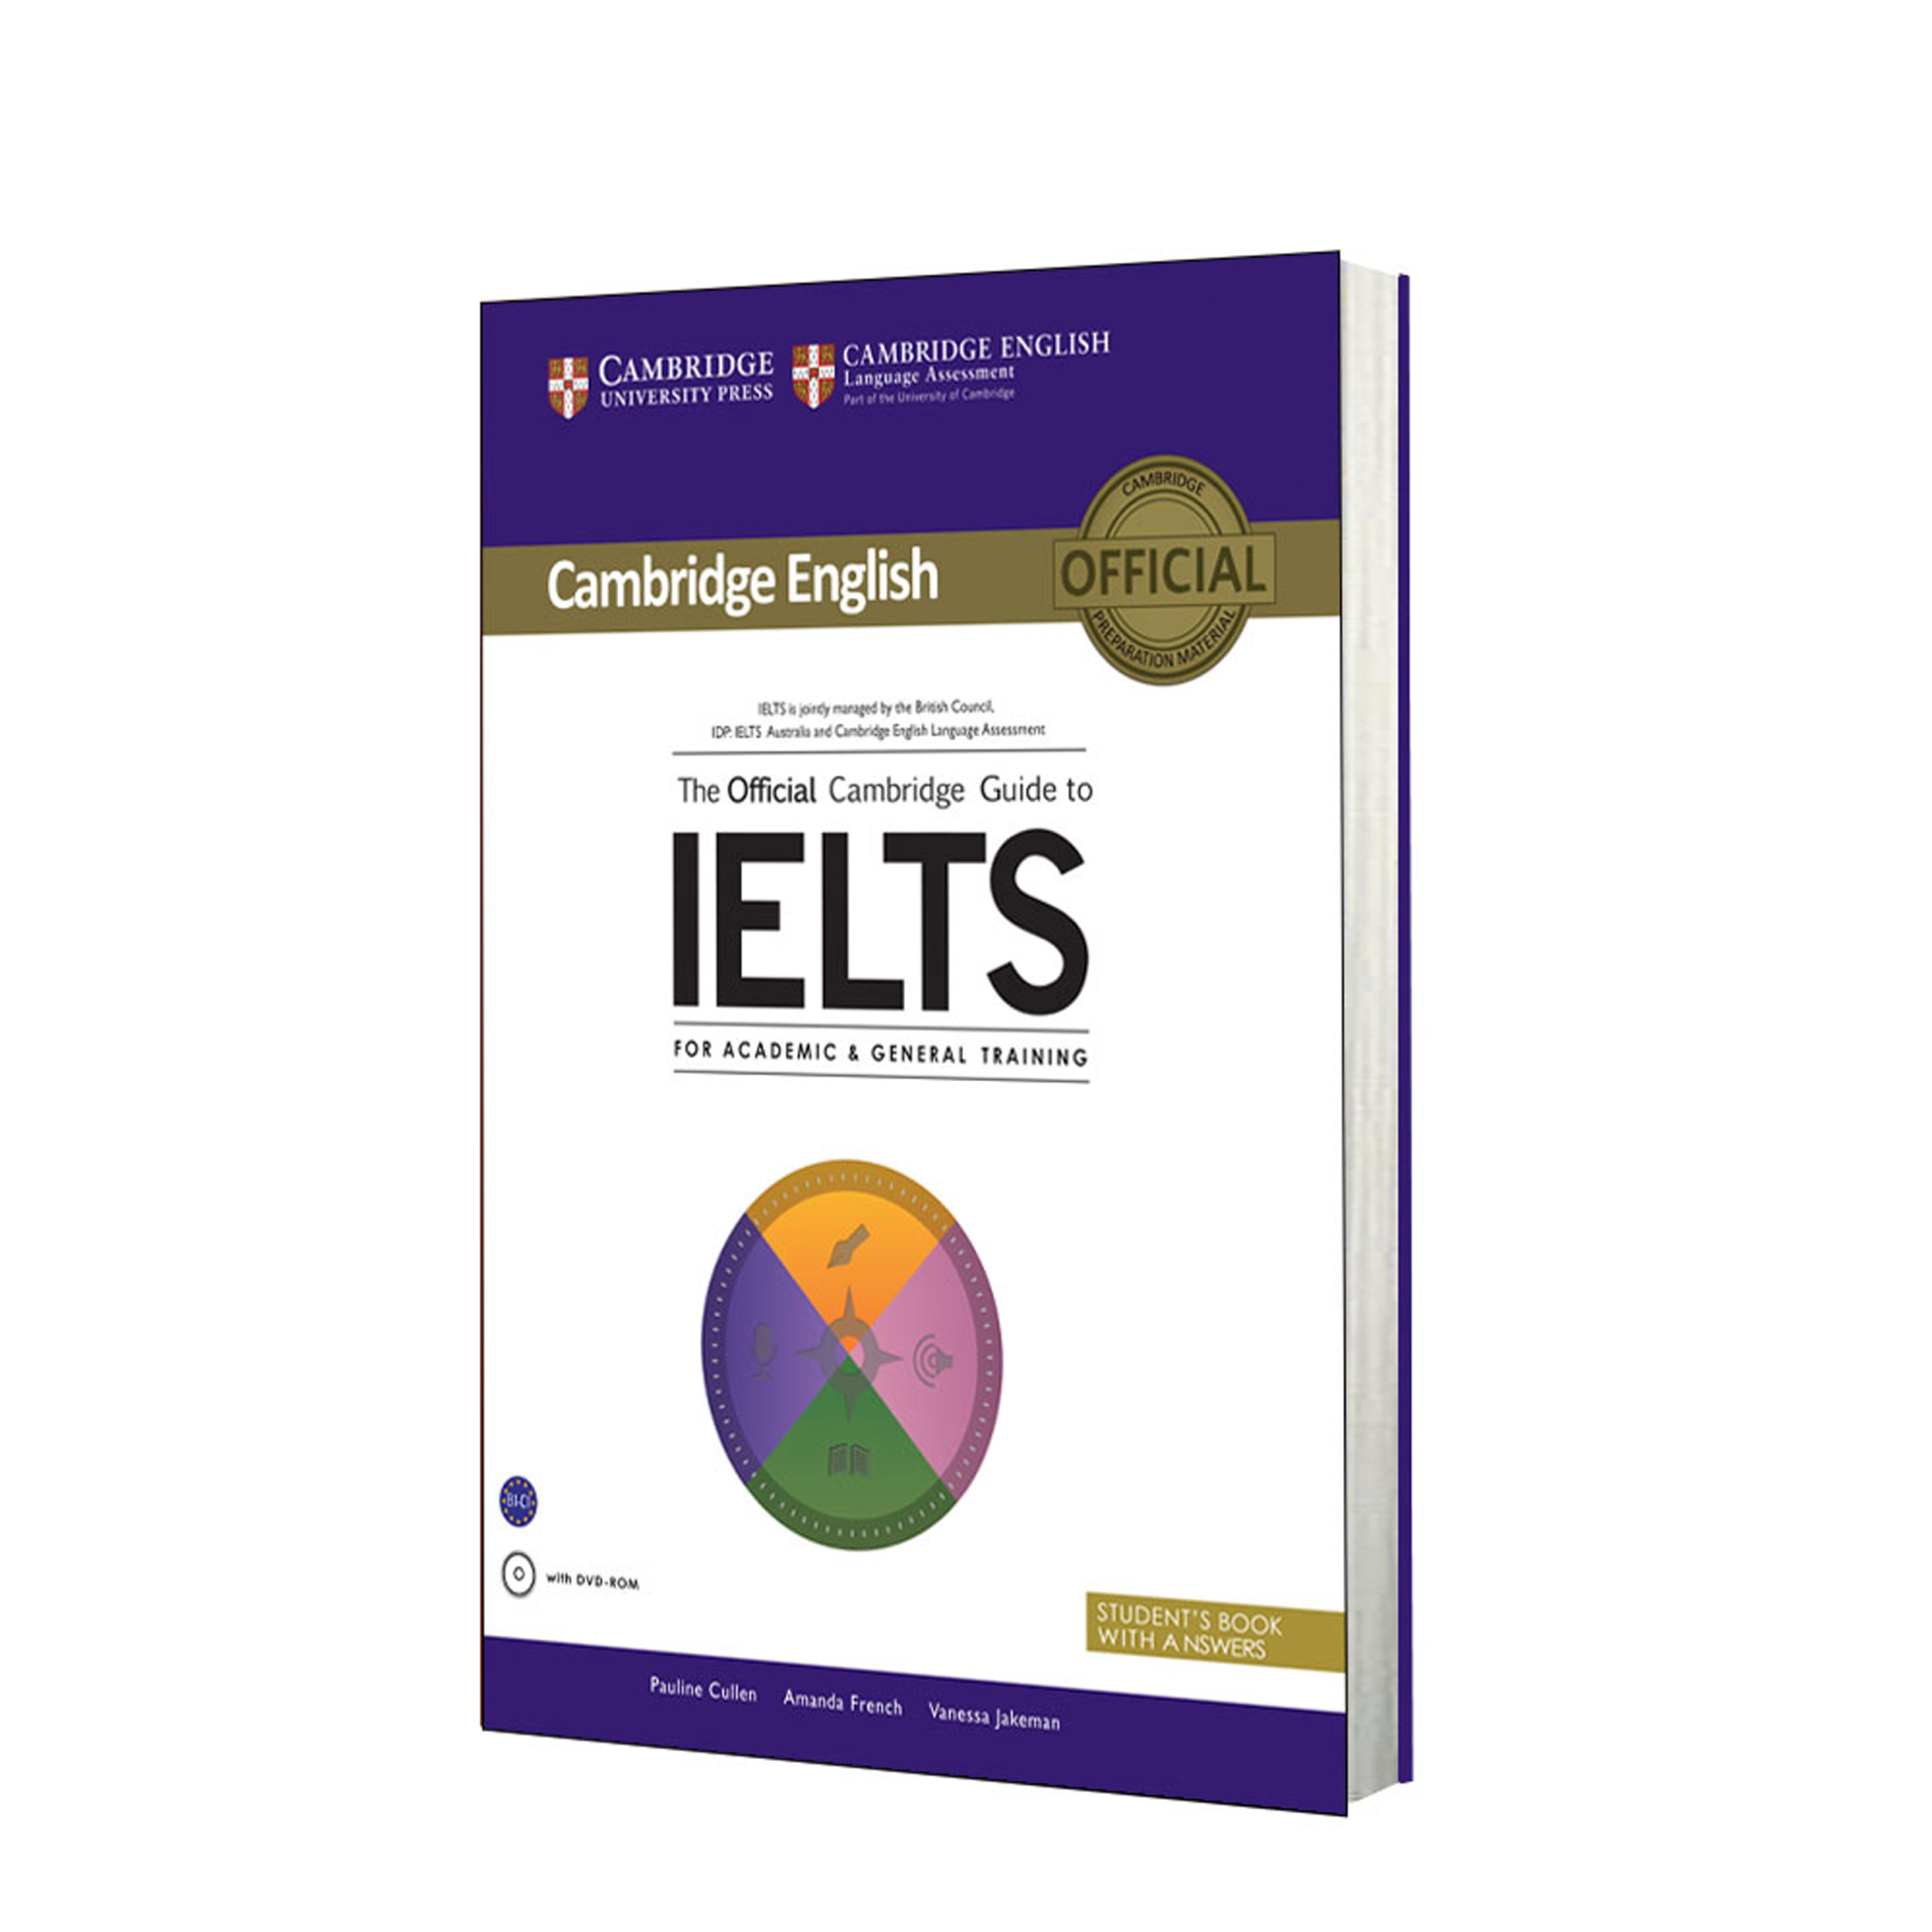 نقد و بررسی کتاب The Official Cambridge Guide to IELTS اثر جمعی از نویسندگان انتشارات آریونا توسط خریداران